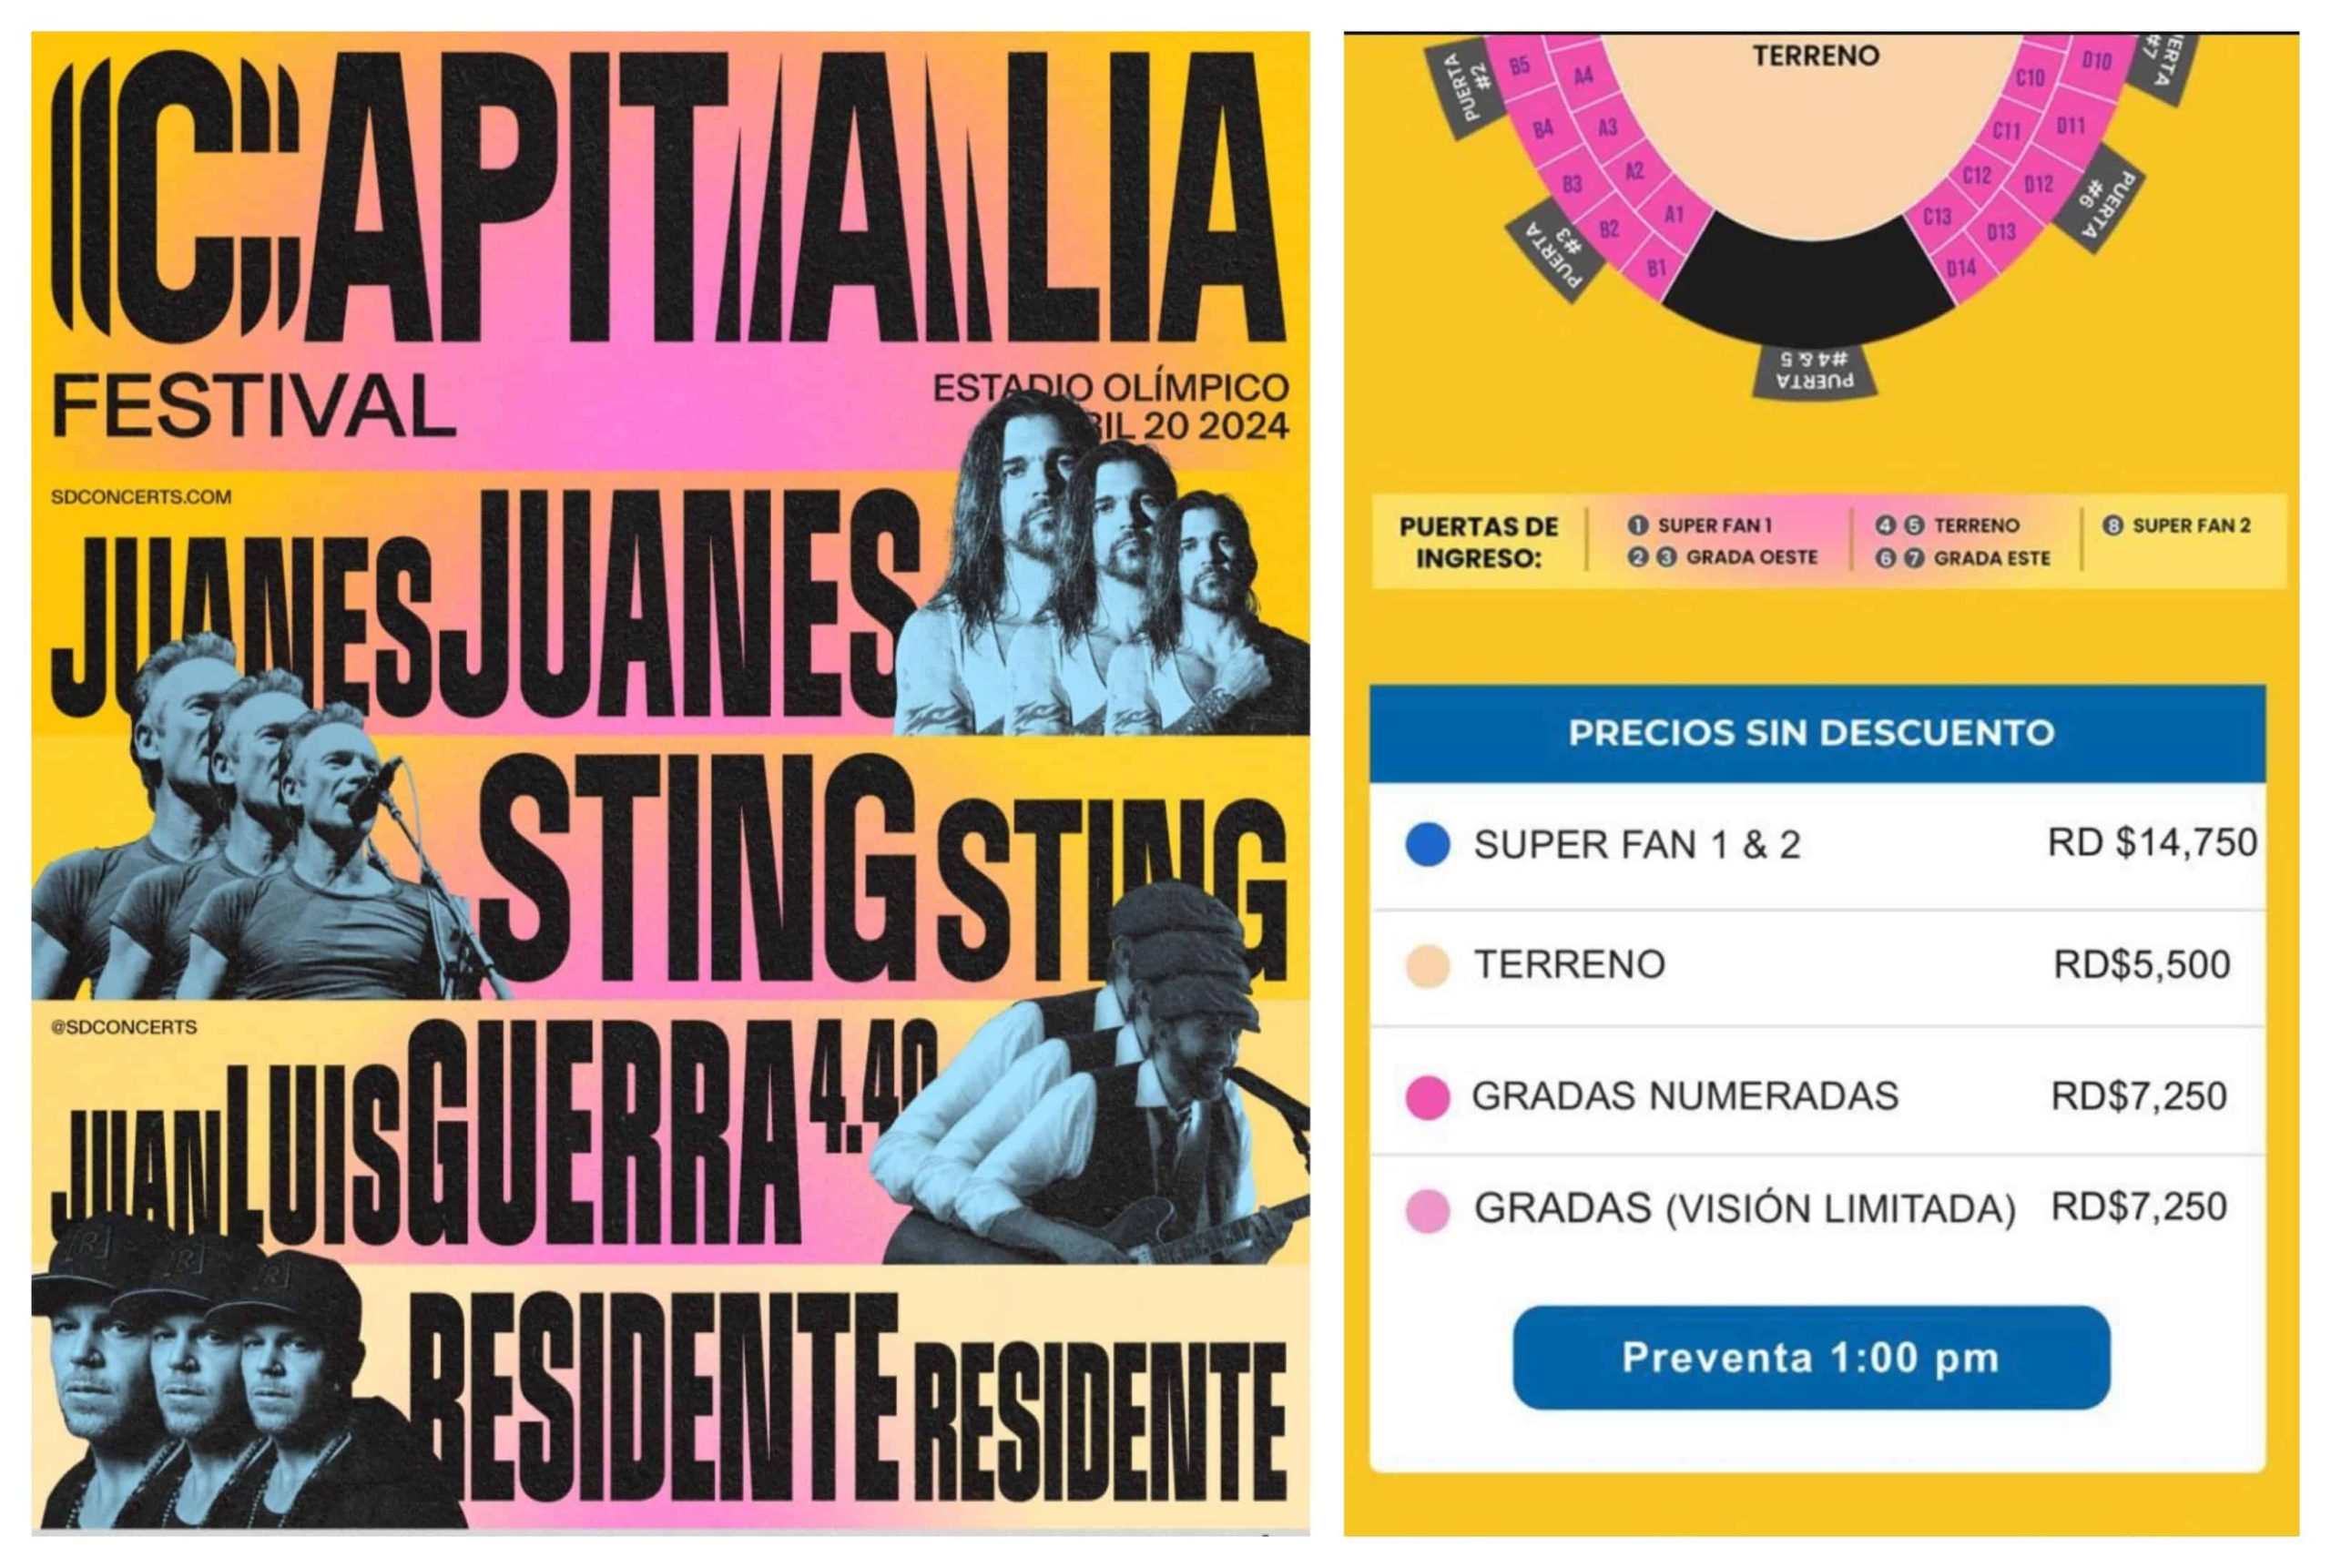 Estos son los precios del Festival Capitalia, con Sting, Juan Luis Guerra, Juanes y Residente